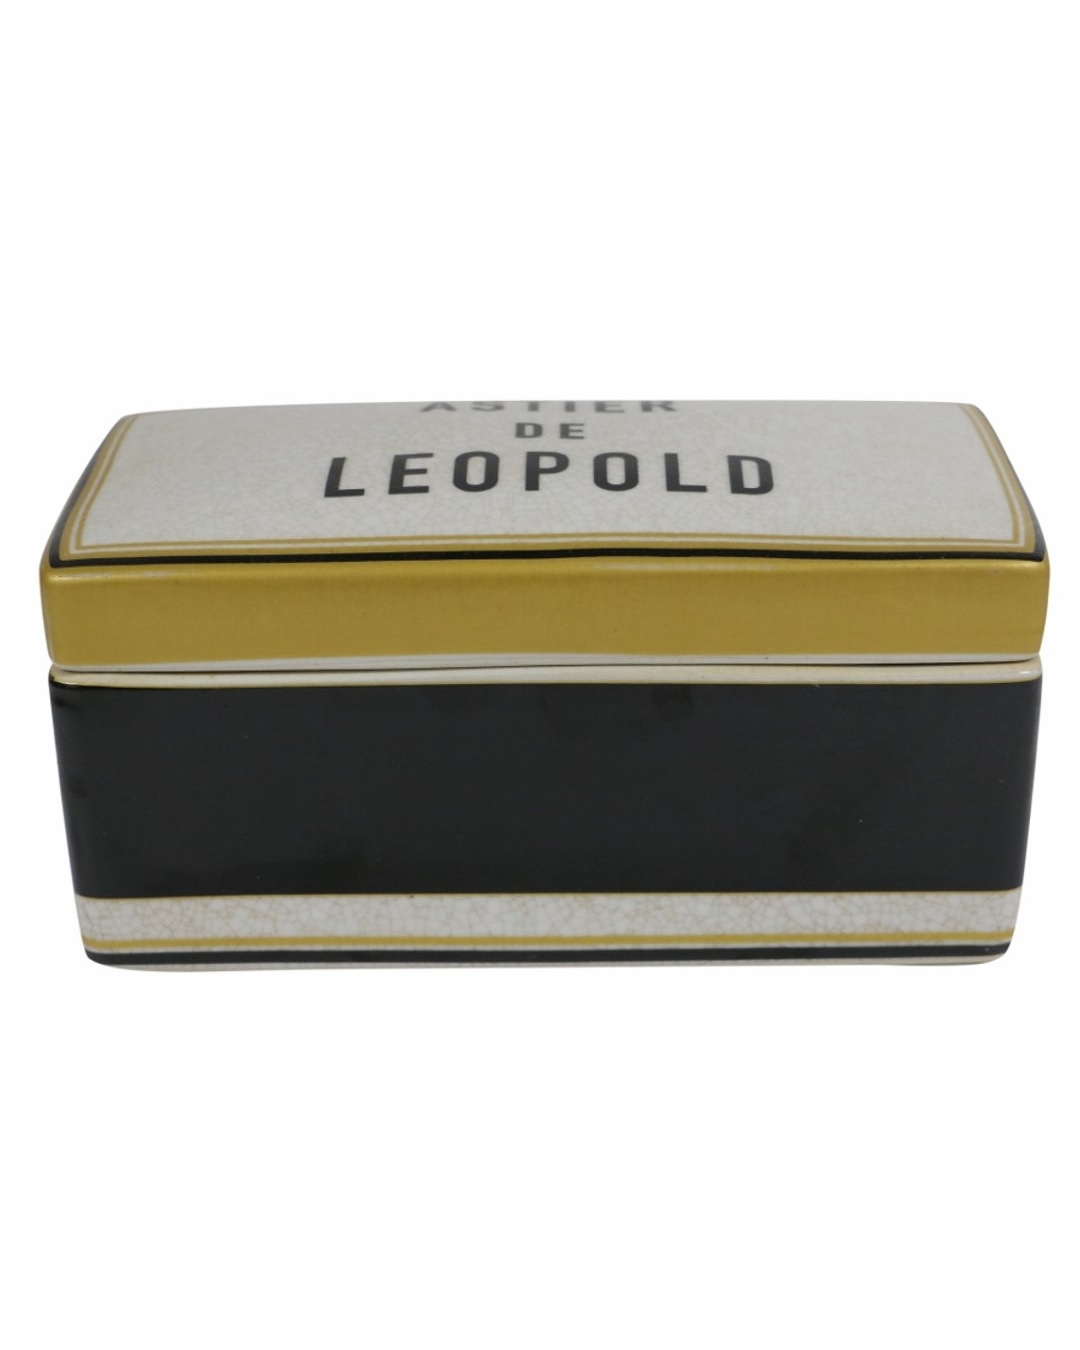 Astier de leopald box for storage